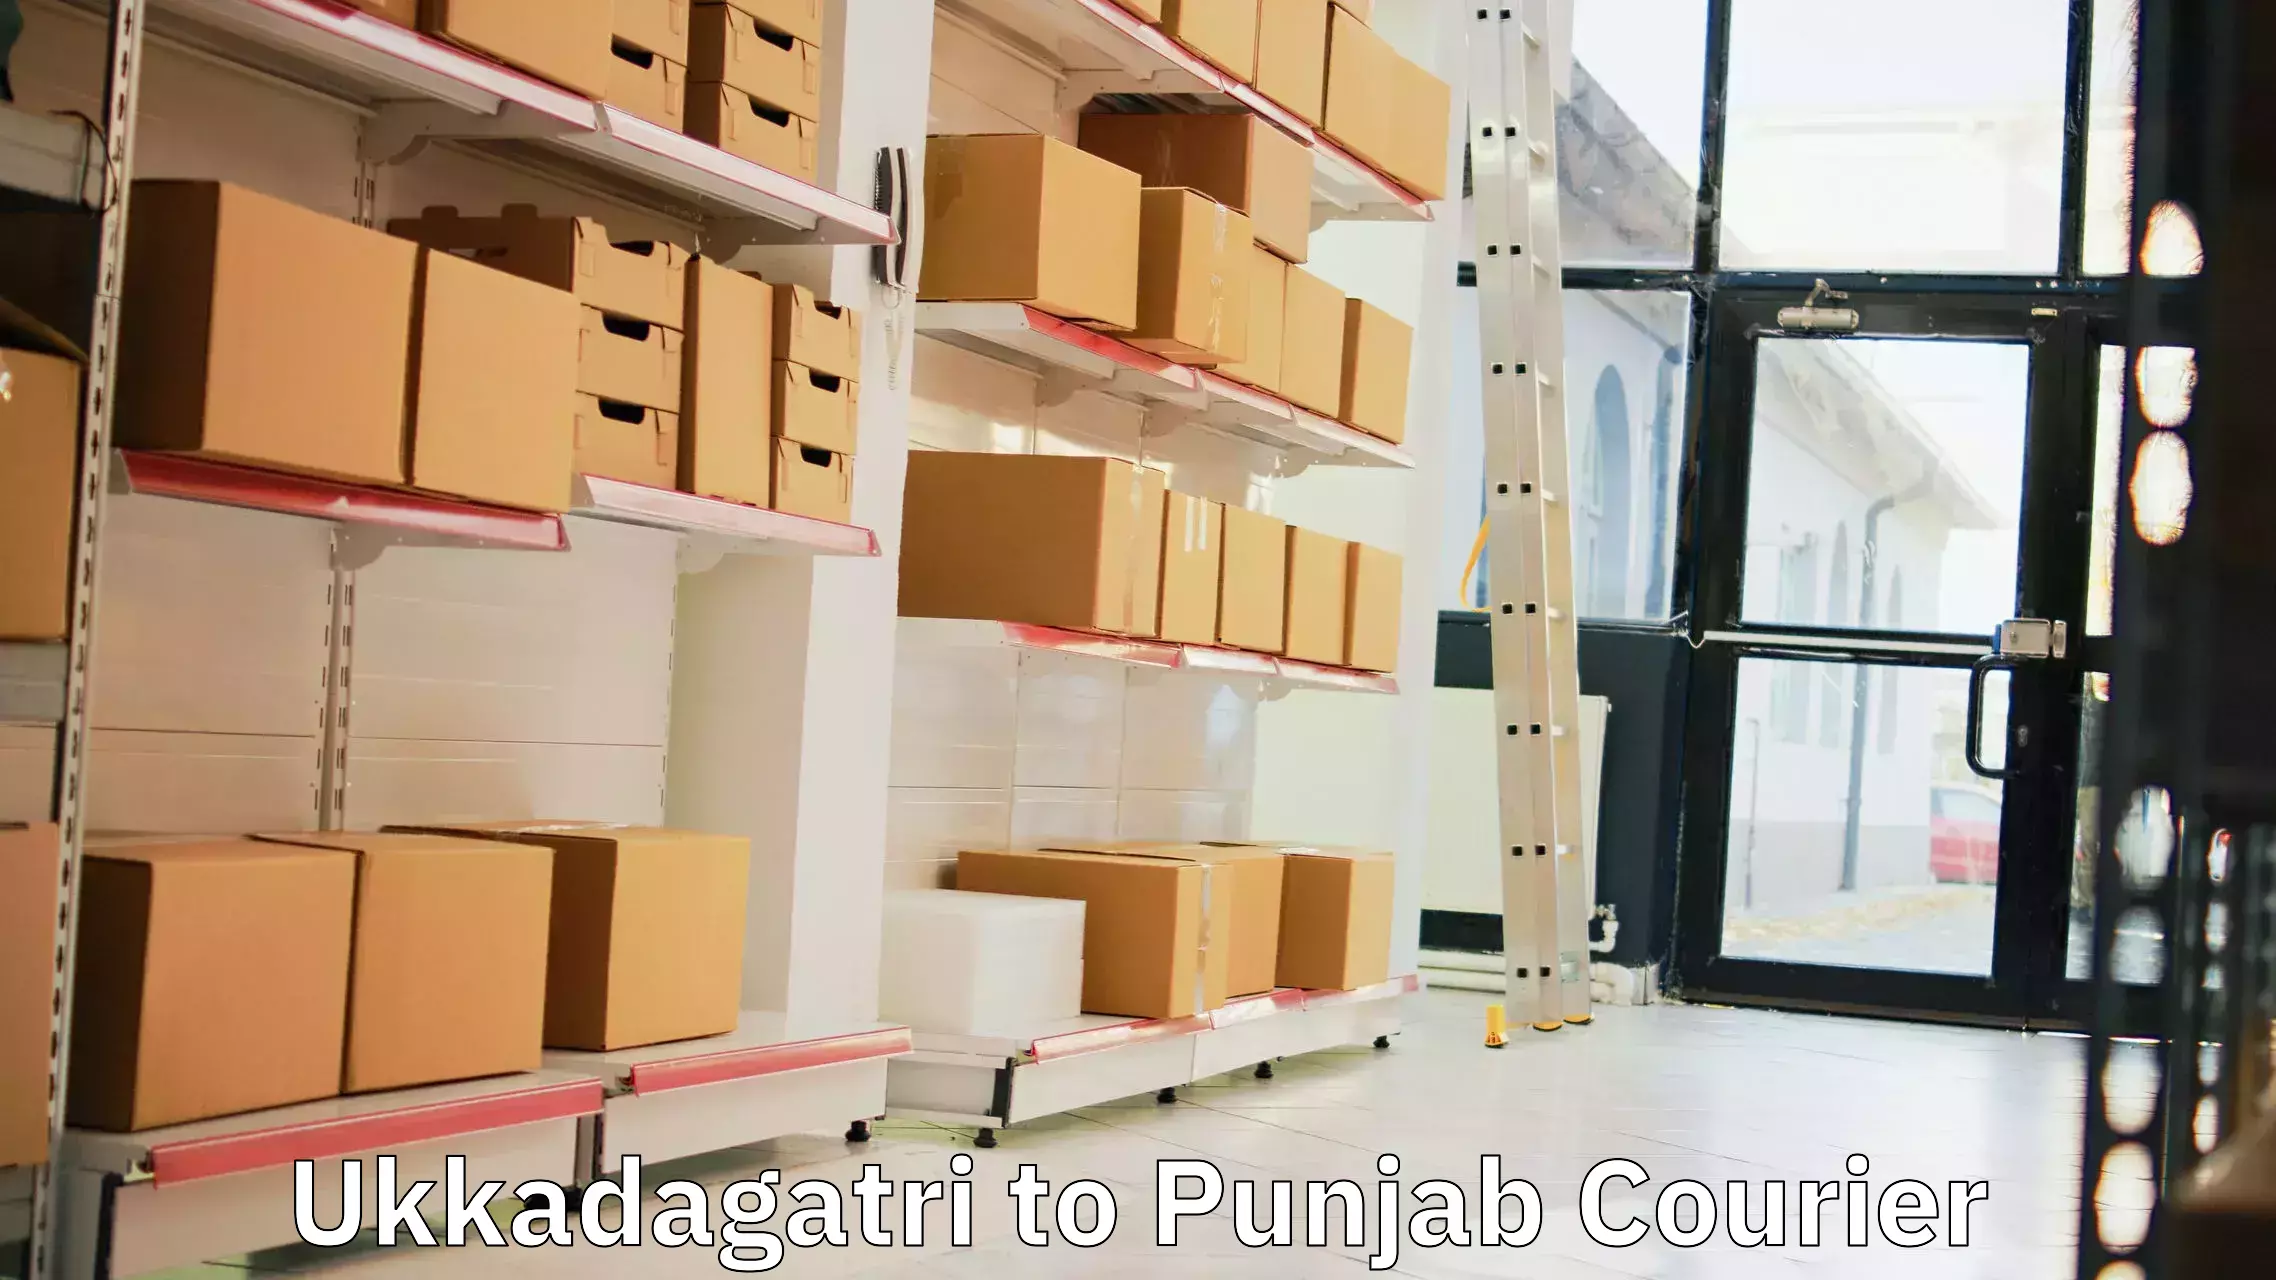 Efficient shipping operations Ukkadagatri to Central University of Punjab Bathinda